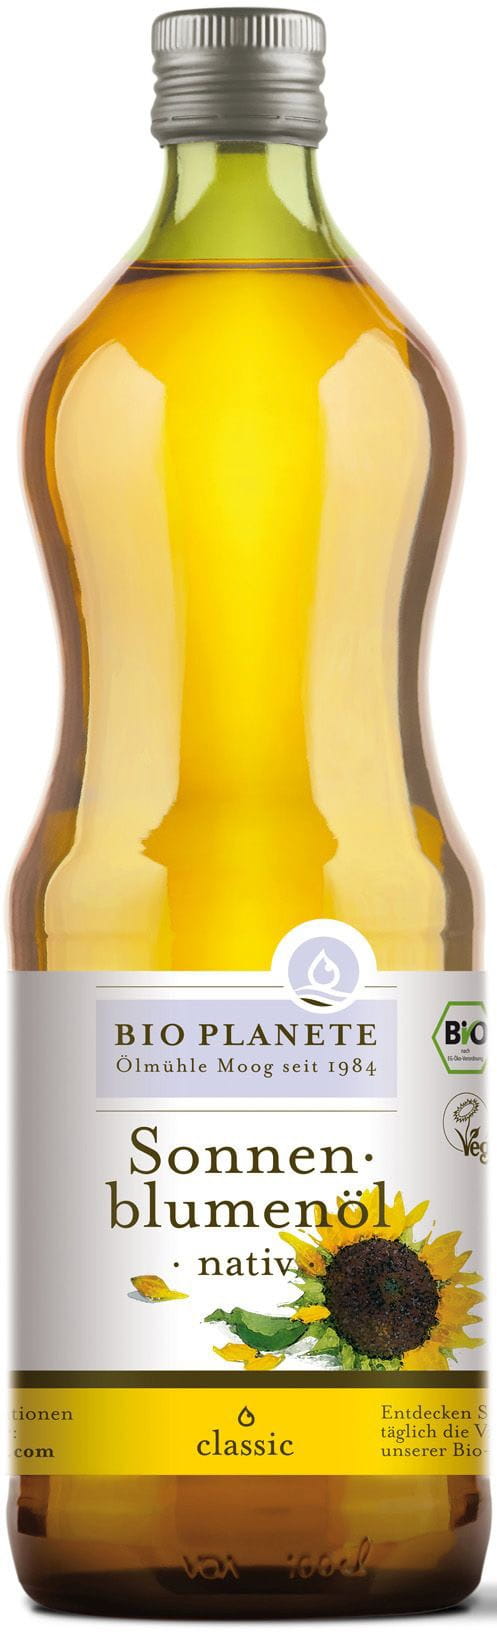 Huile de cumin noir vierge - Bio planete - 100 ml